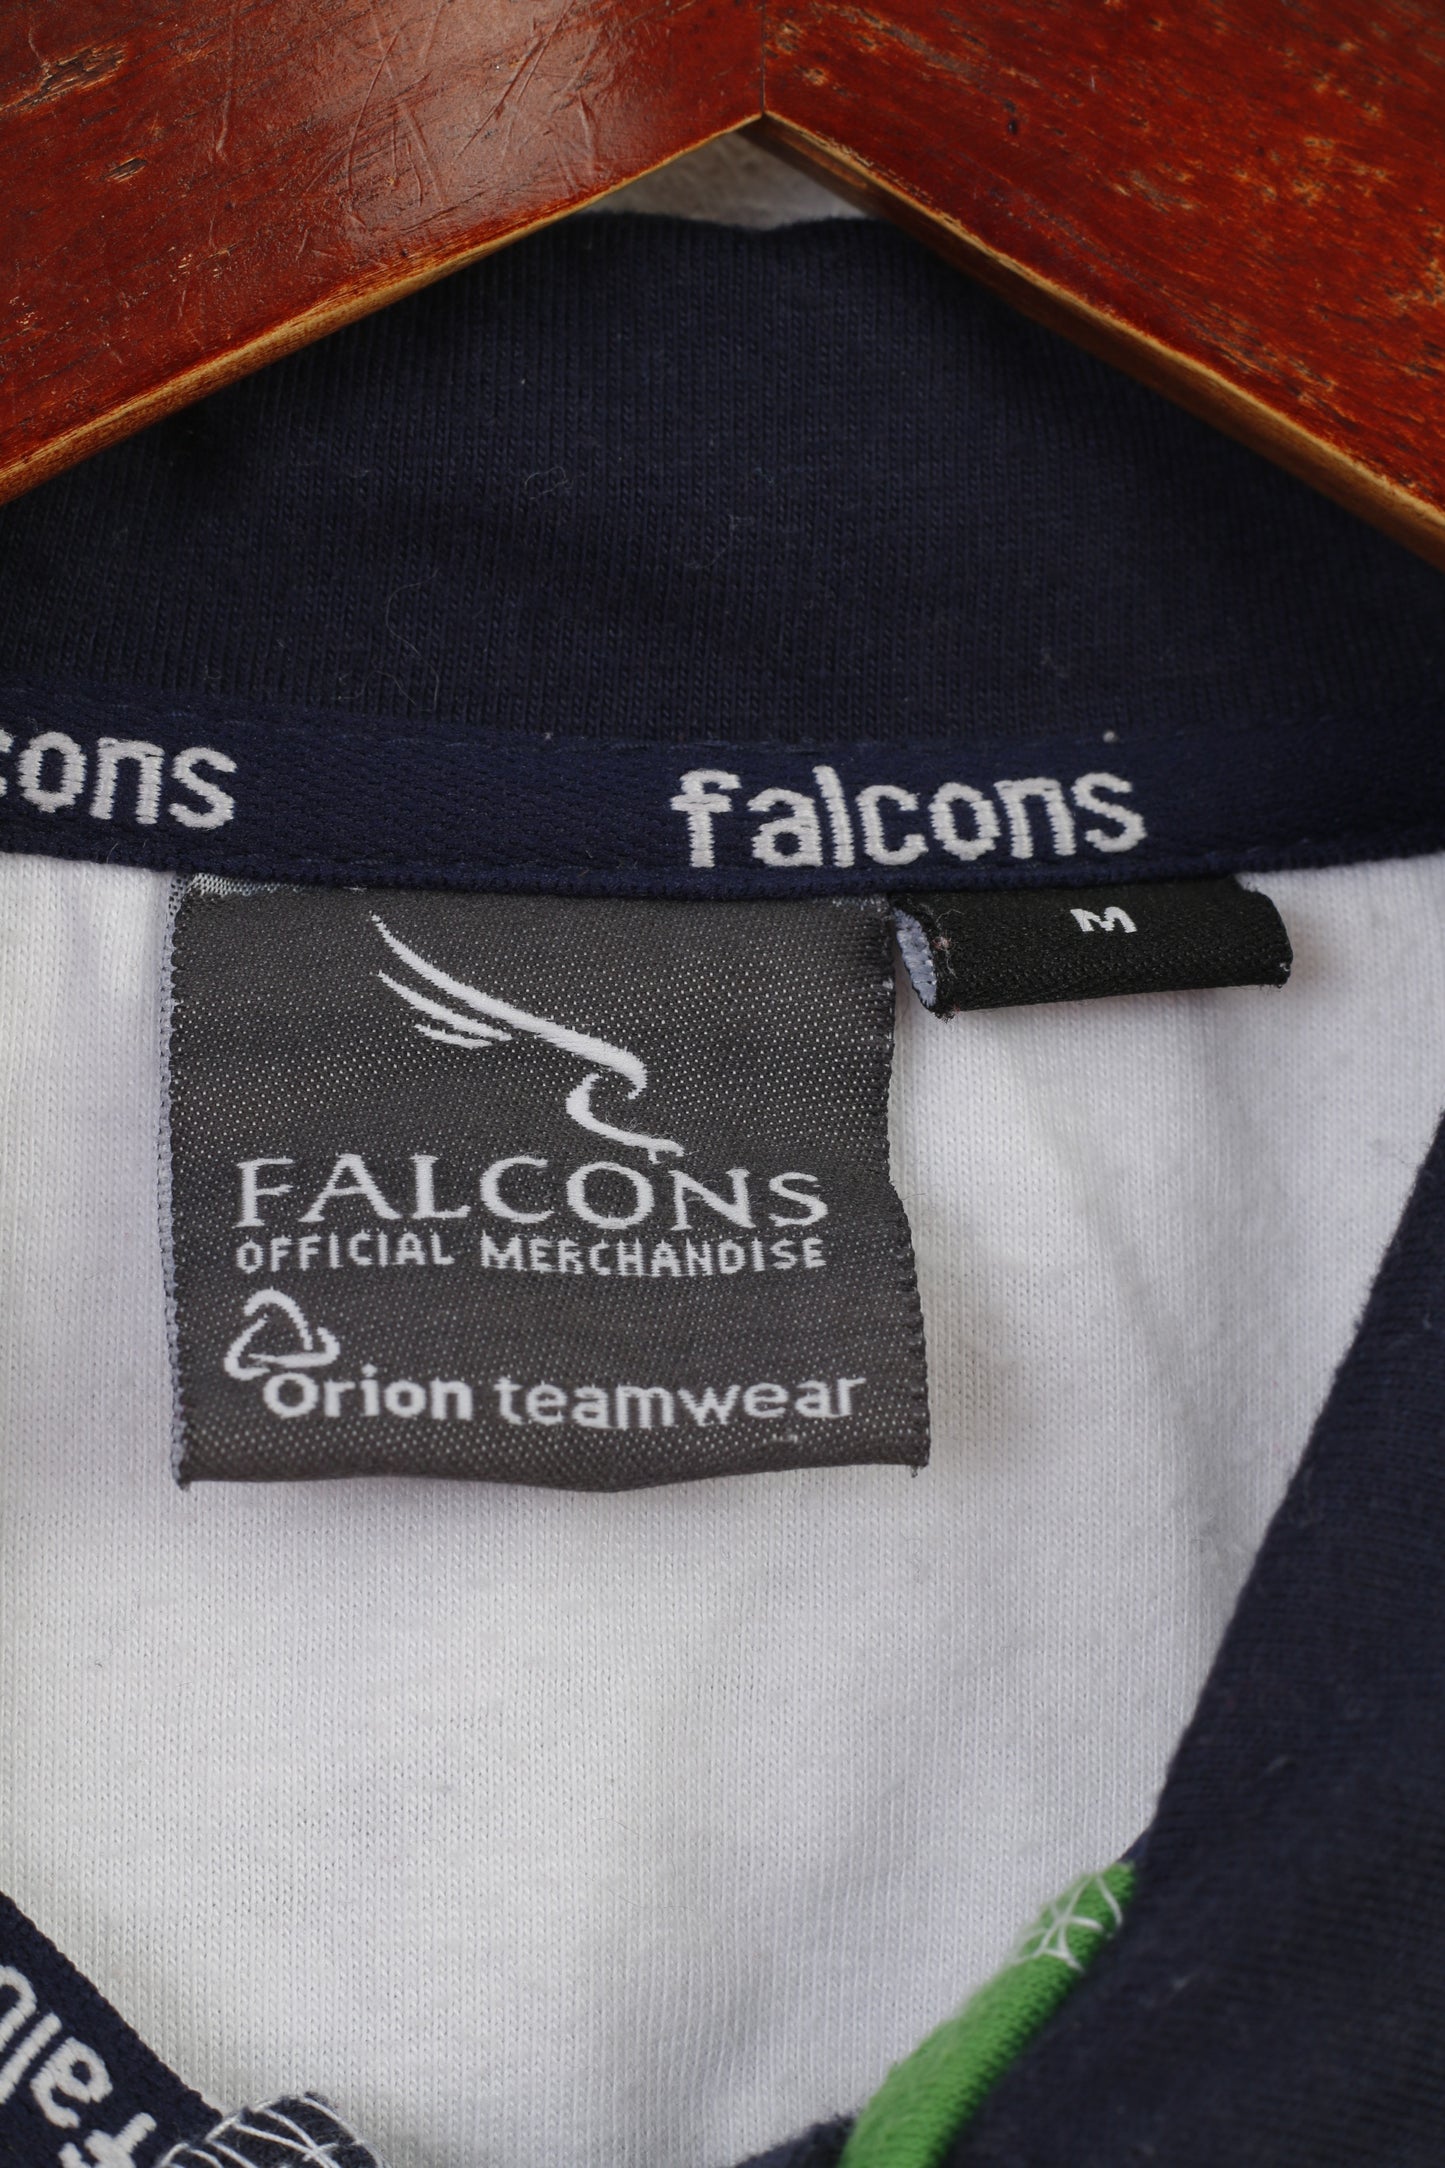 Falcons Men M Polo Shirt Cotton  Navy White American Football Atlanta Short Sleeve Top